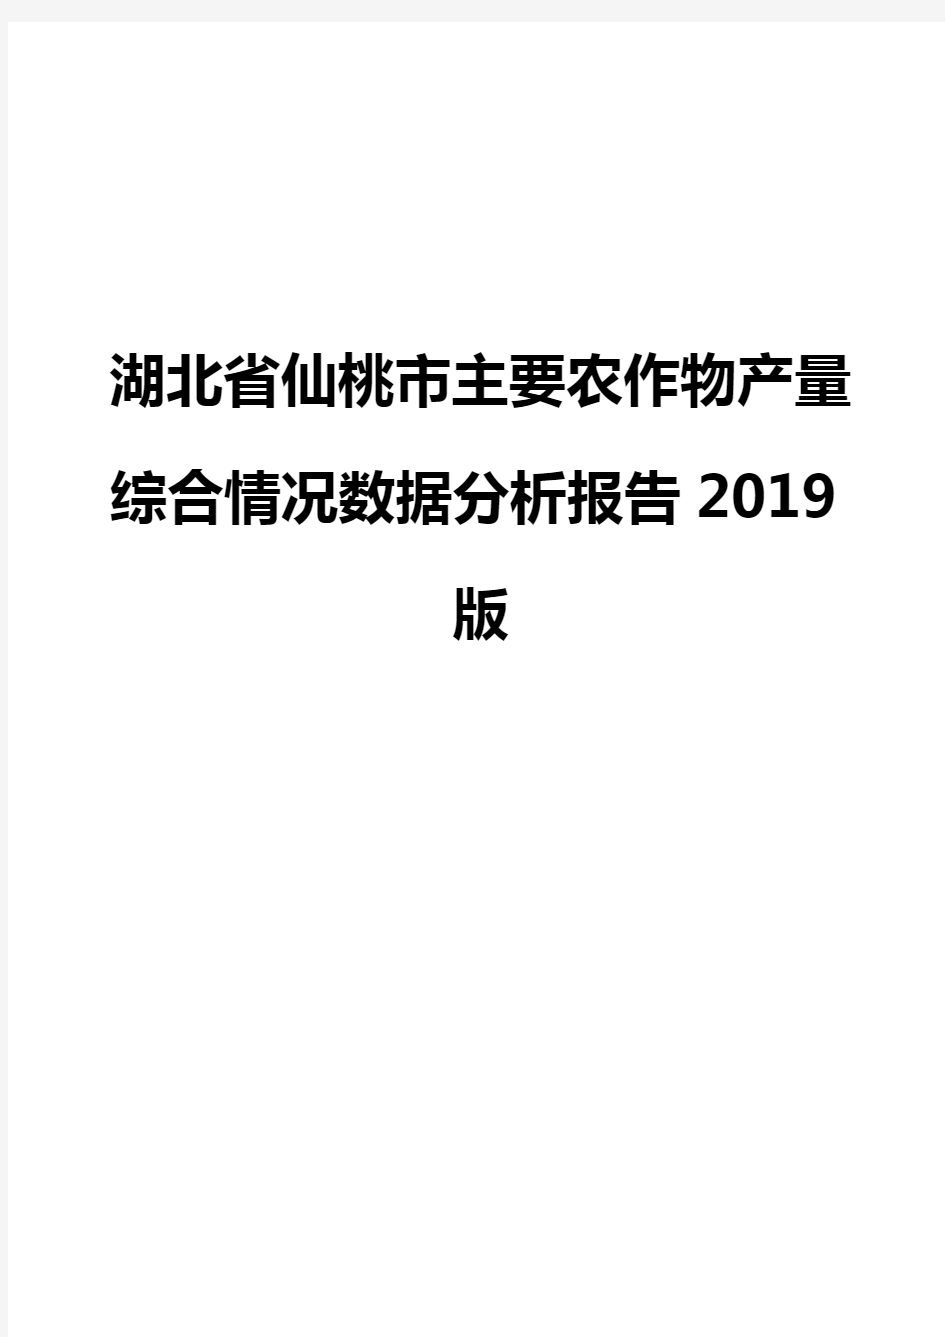 湖北省仙桃市主要农作物产量综合情况数据分析报告2019版